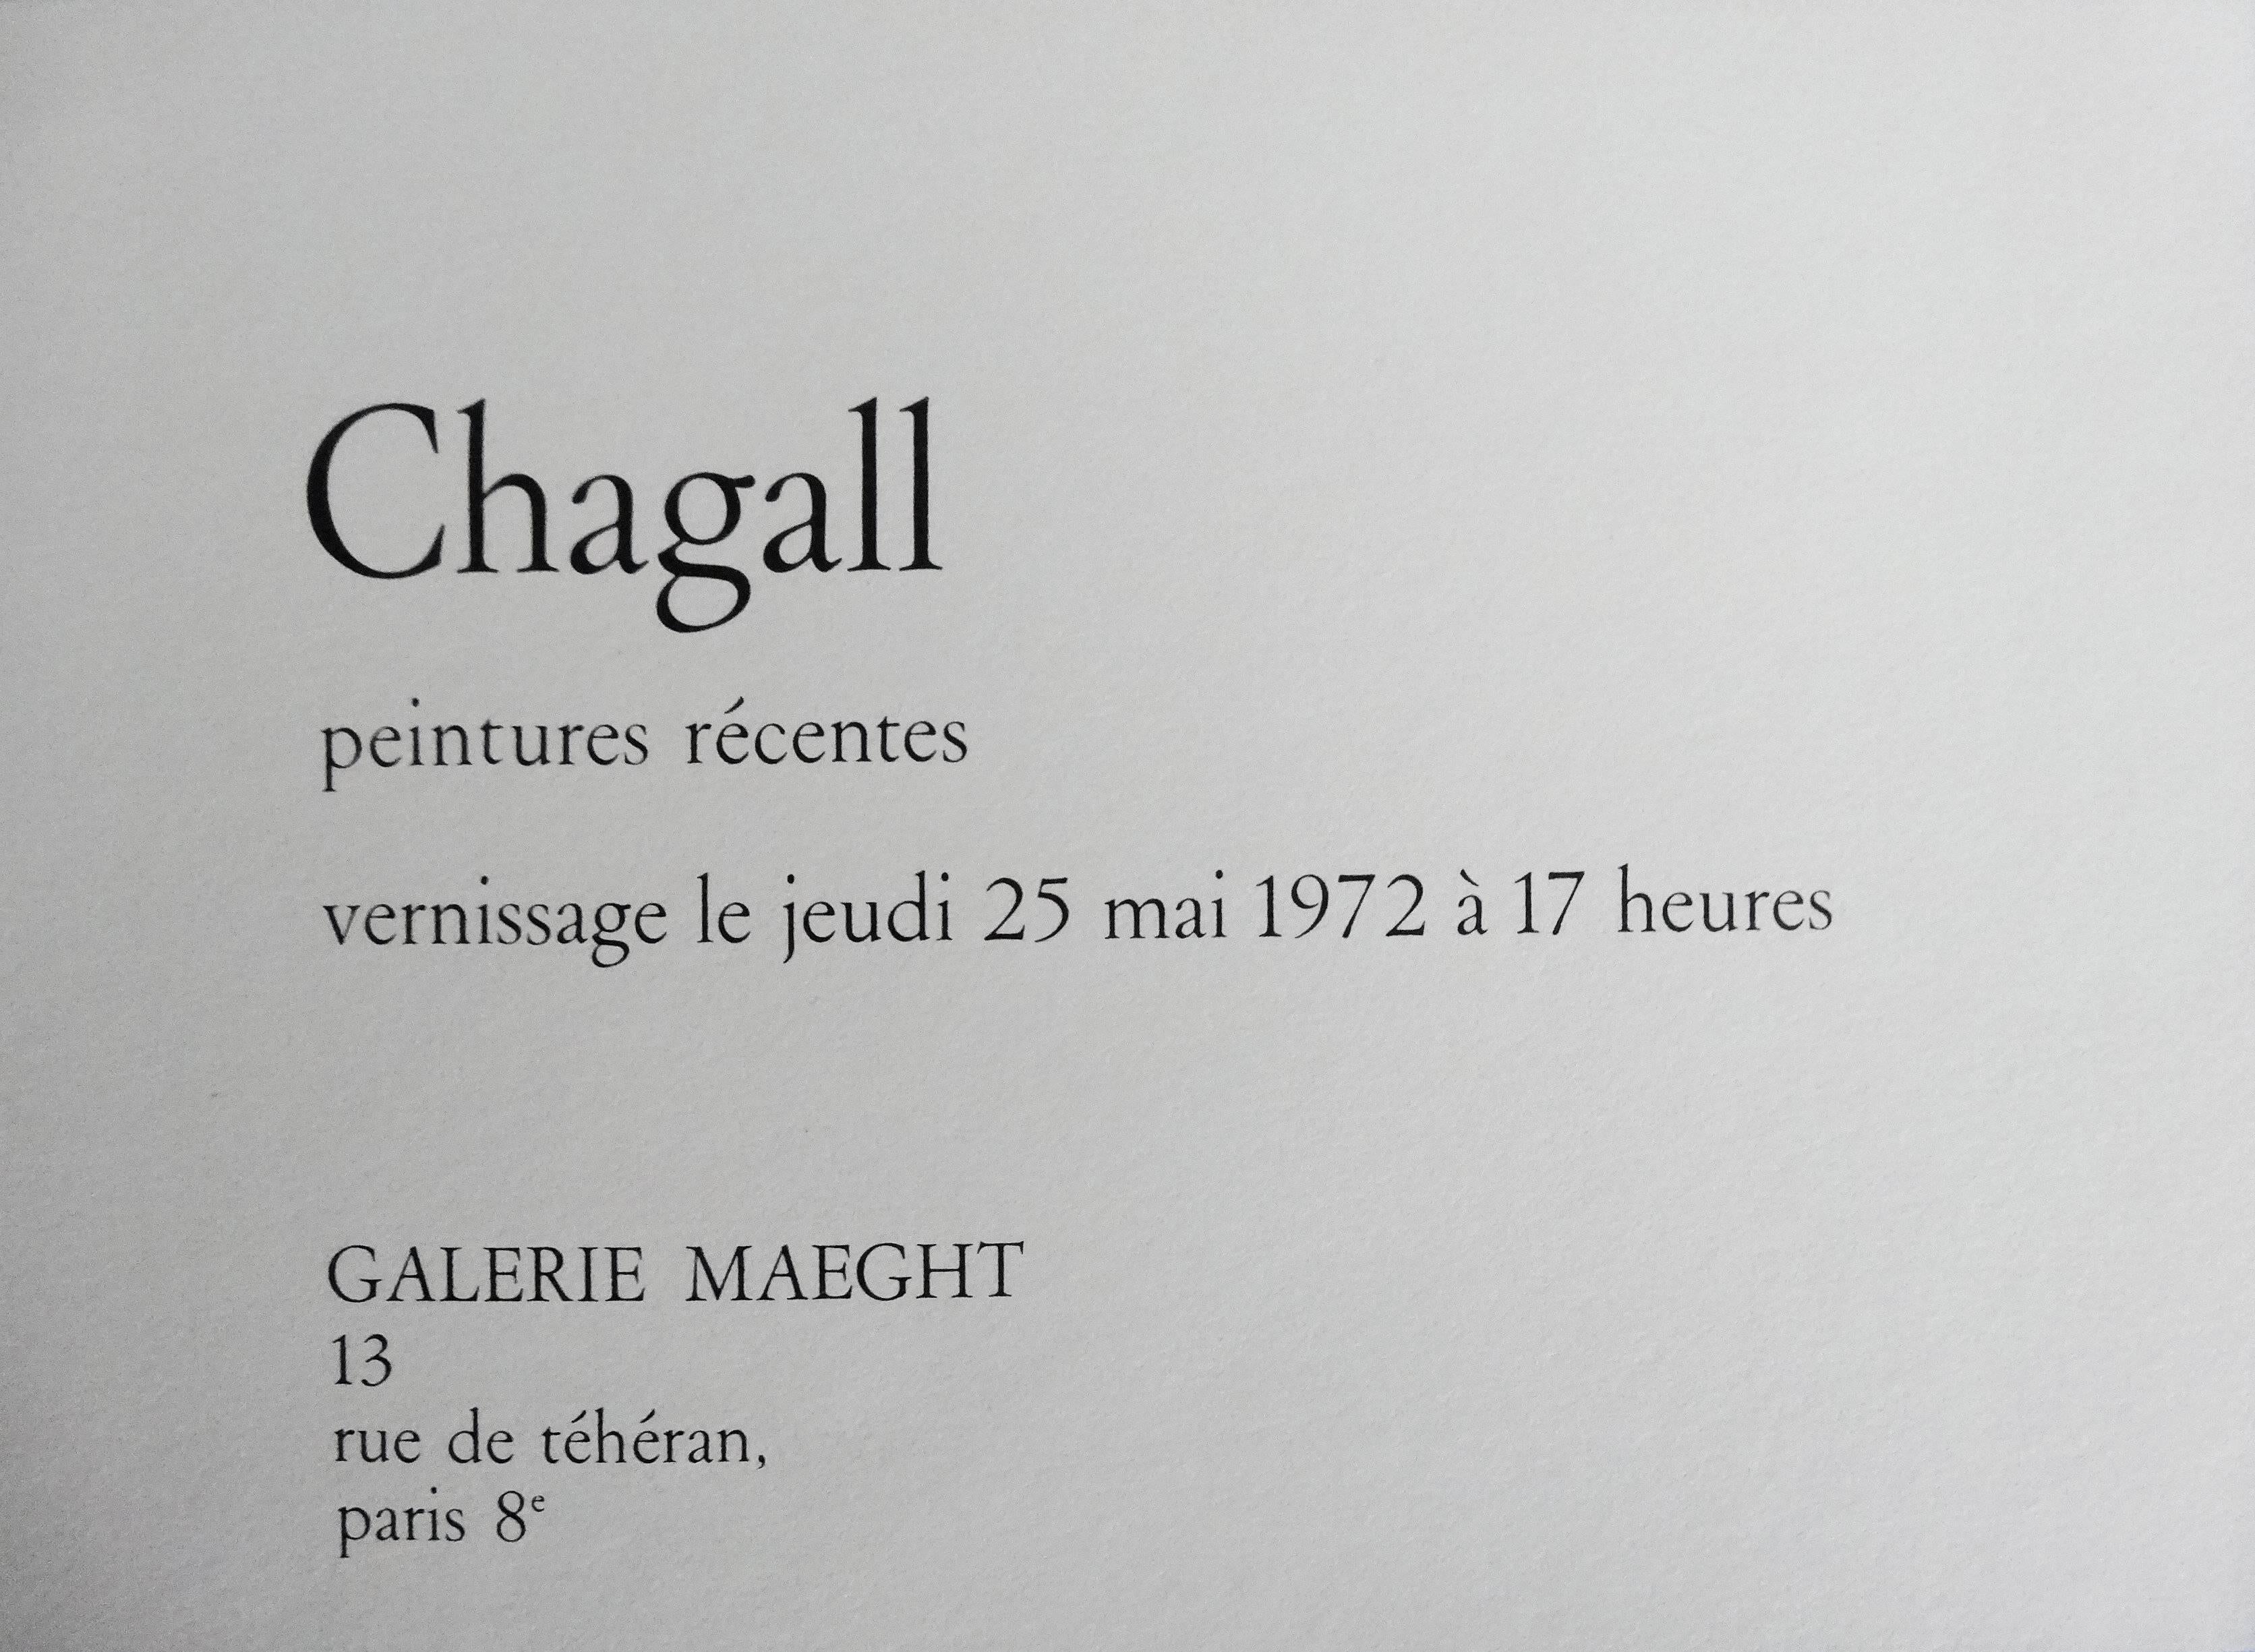 Marc CHAGALL (après)
Femme avec des fleurs

Lithographie d'après un dessin de Chagall
Imprimé dans l'atelier Arte / Maeght
Sur vélin 16 x 22 cm (c. 6 x 9 in)

INFORMATION : Lithographie créée pour le carton d'invitation du vernissage  